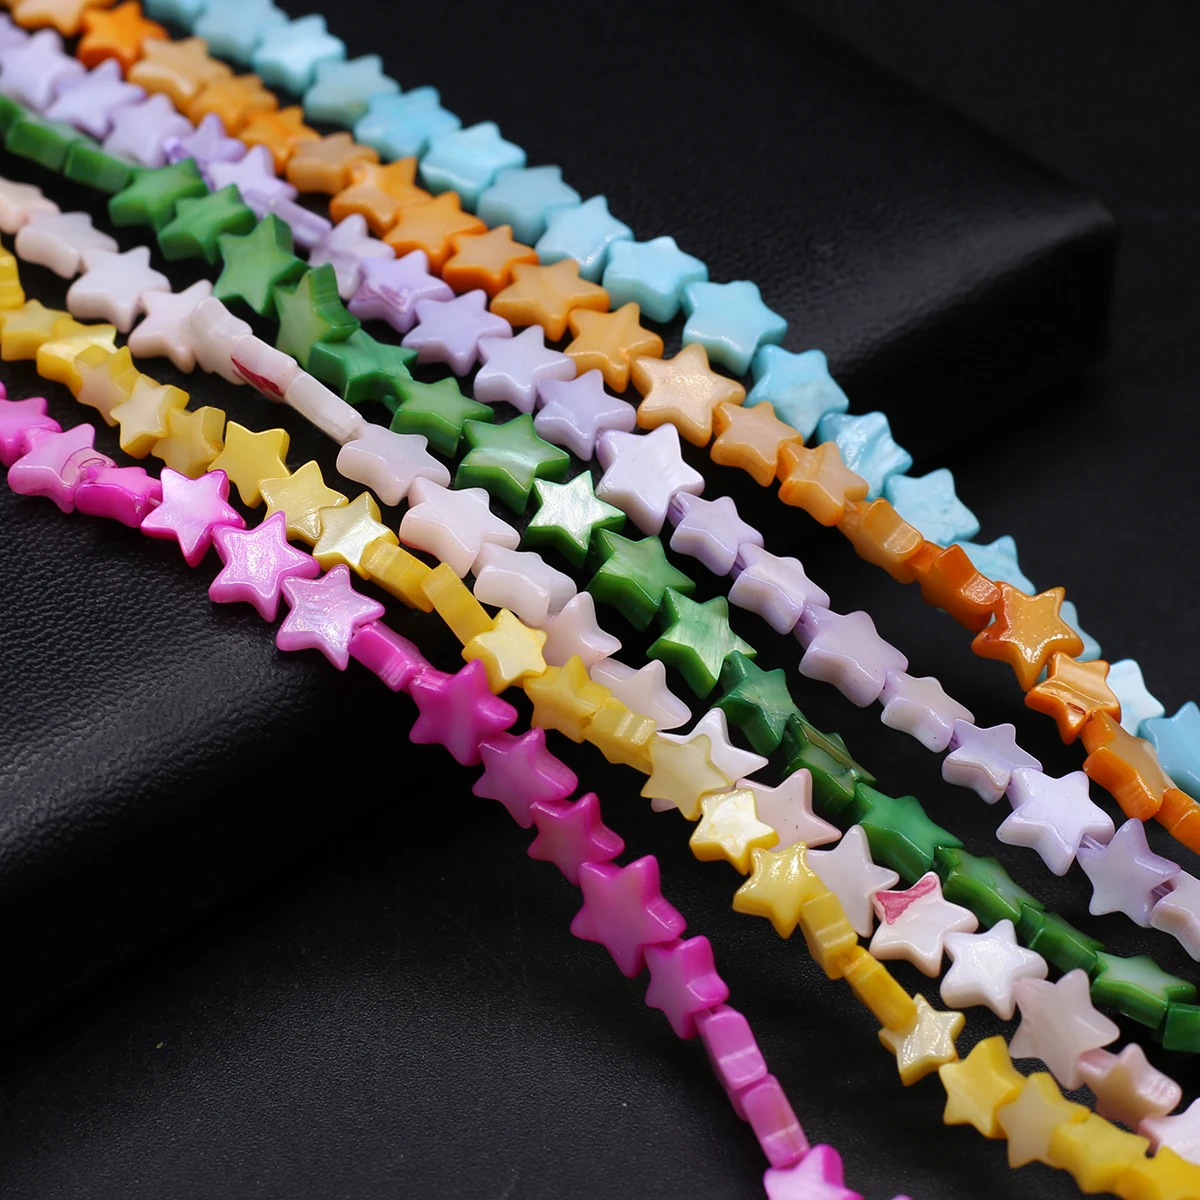 

Разноцветные окрашенные искусственные жемчужные бусины в форме звезды для изготовления украшений своими руками